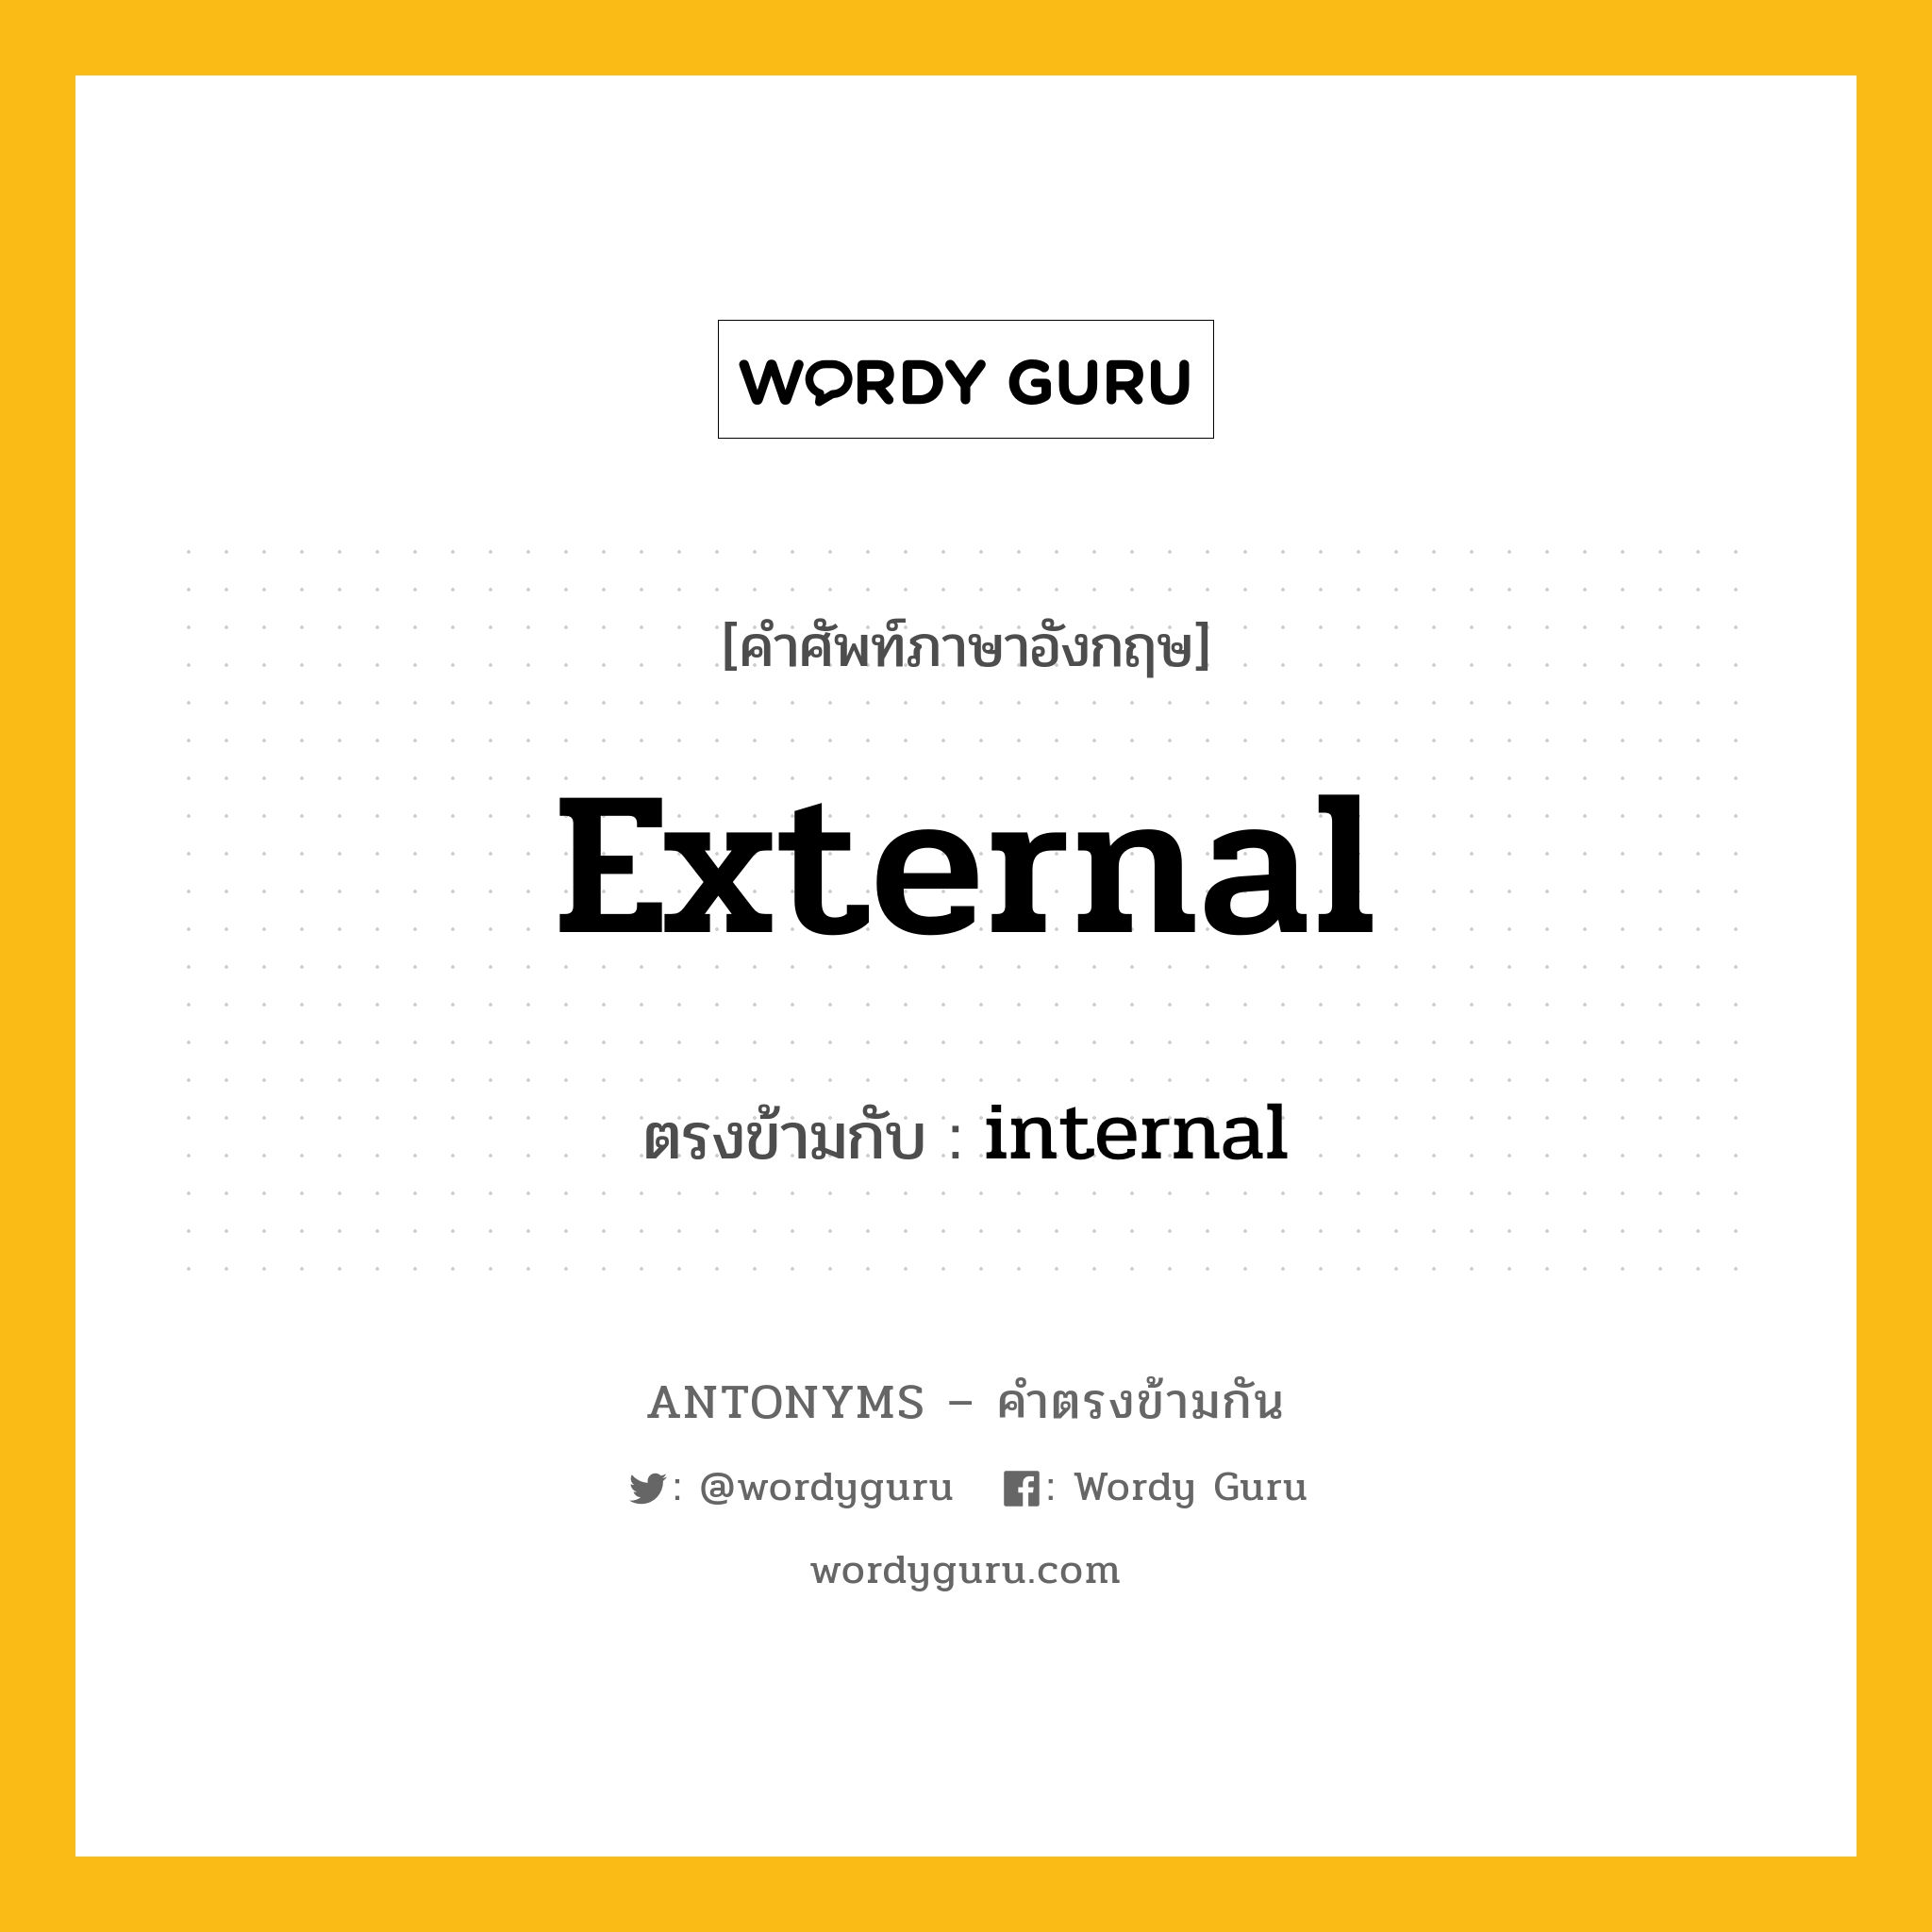 external เป็นคำตรงข้ามกับคำไหนบ้าง?, คำศัพท์ภาษาอังกฤษ external ตรงข้ามกับ internal หมวด internal